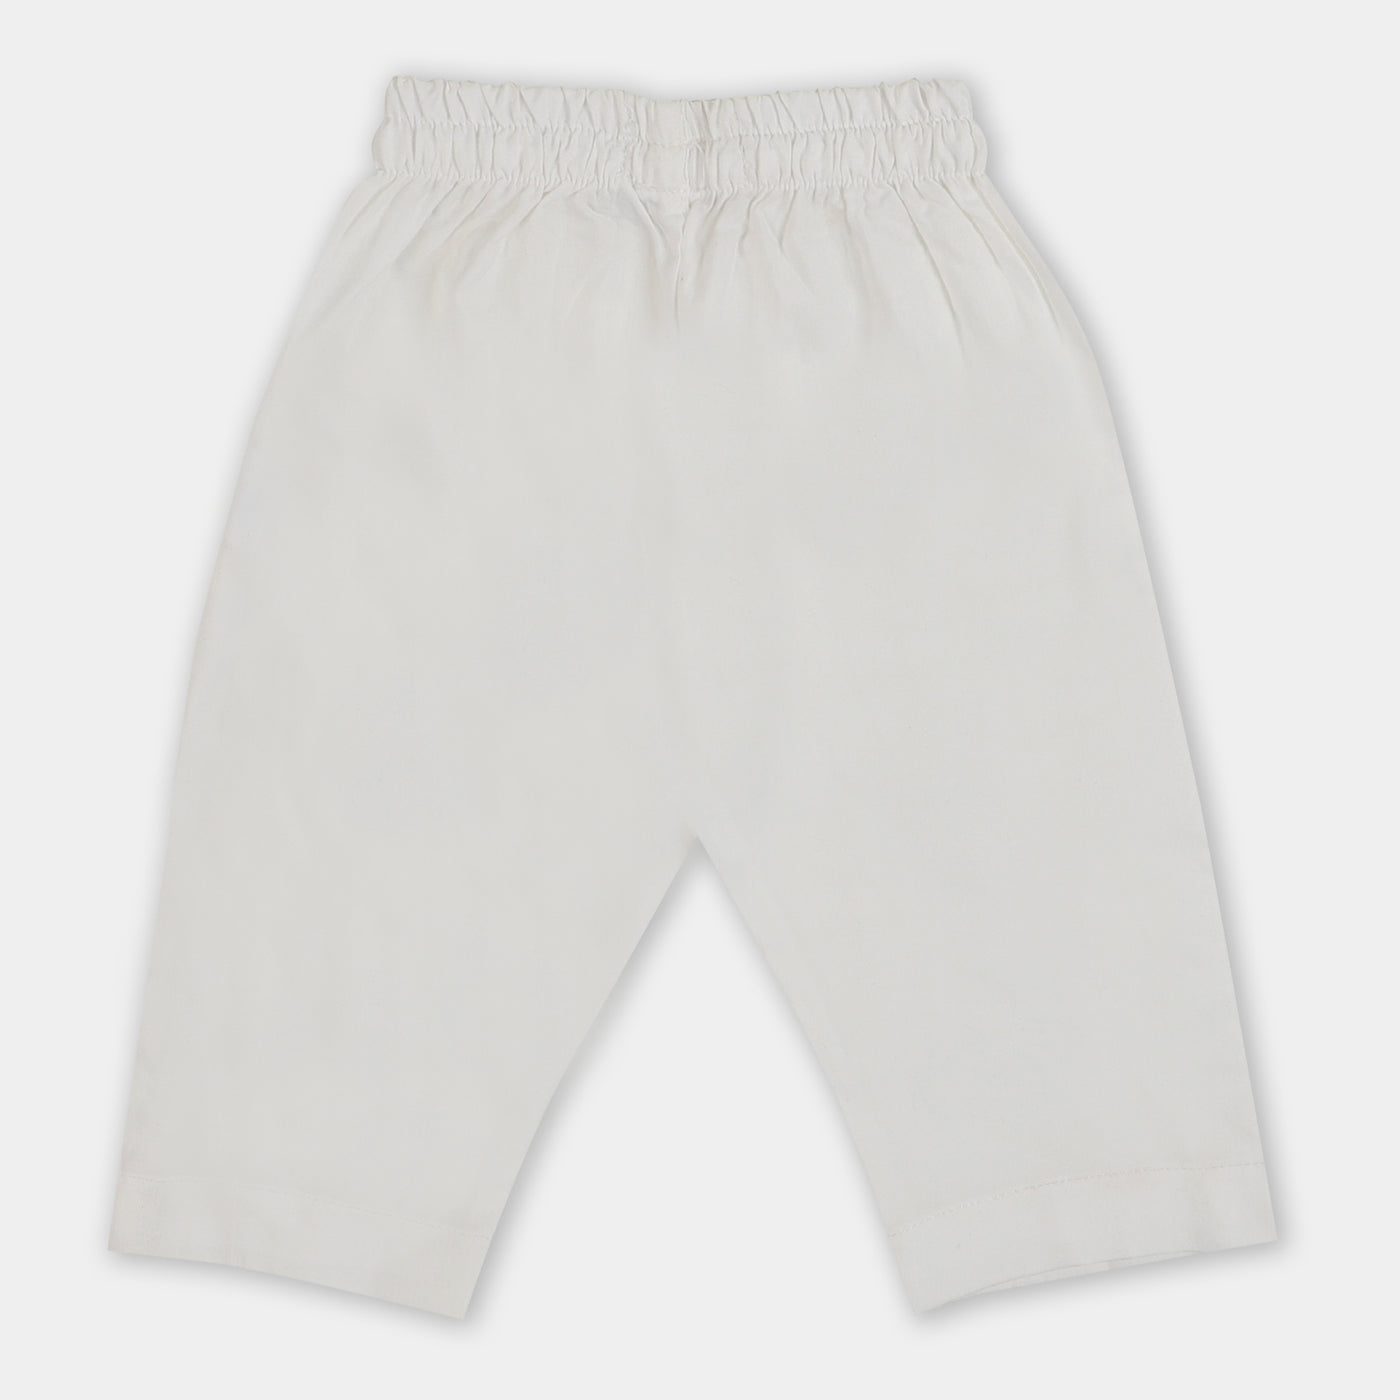 Infant Boys Eastern Basic Pajama- White